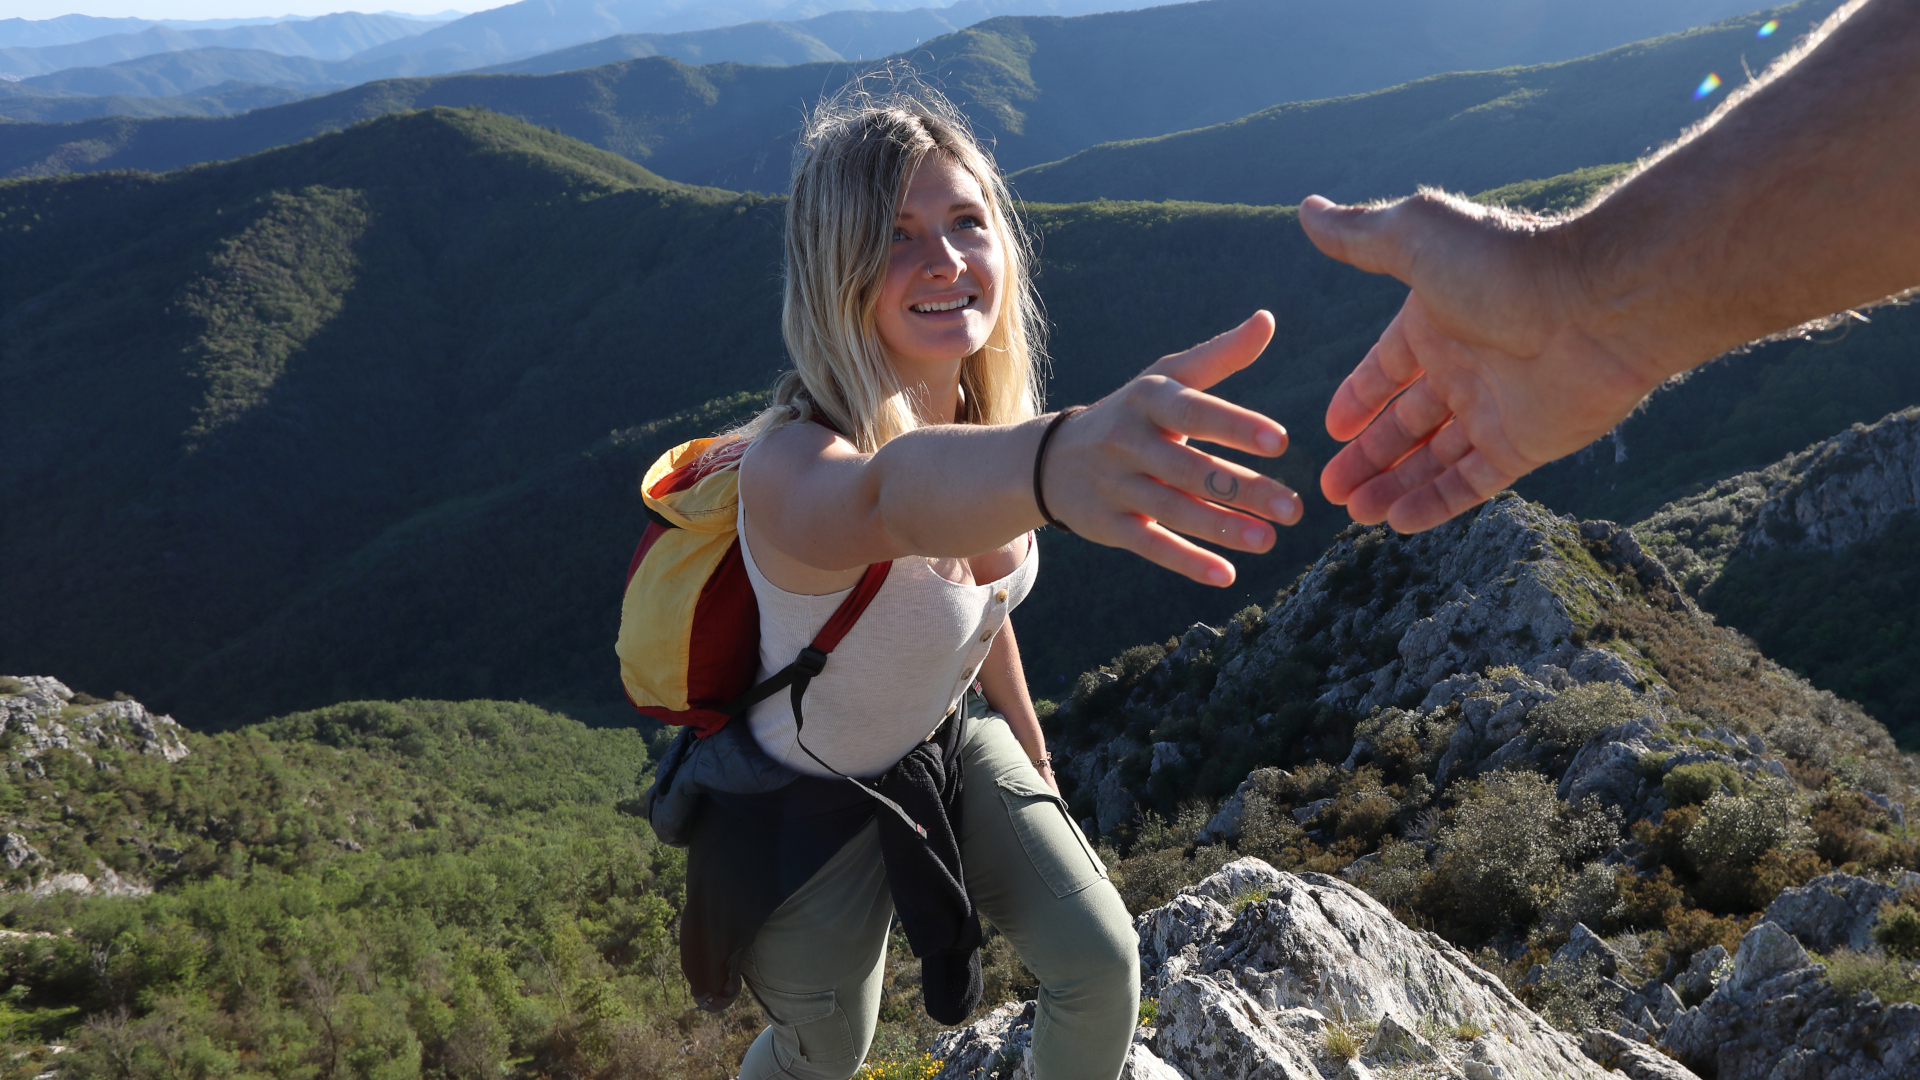 Un excursionista extiende una mano para que un guía lo ayude a subir una montaña.